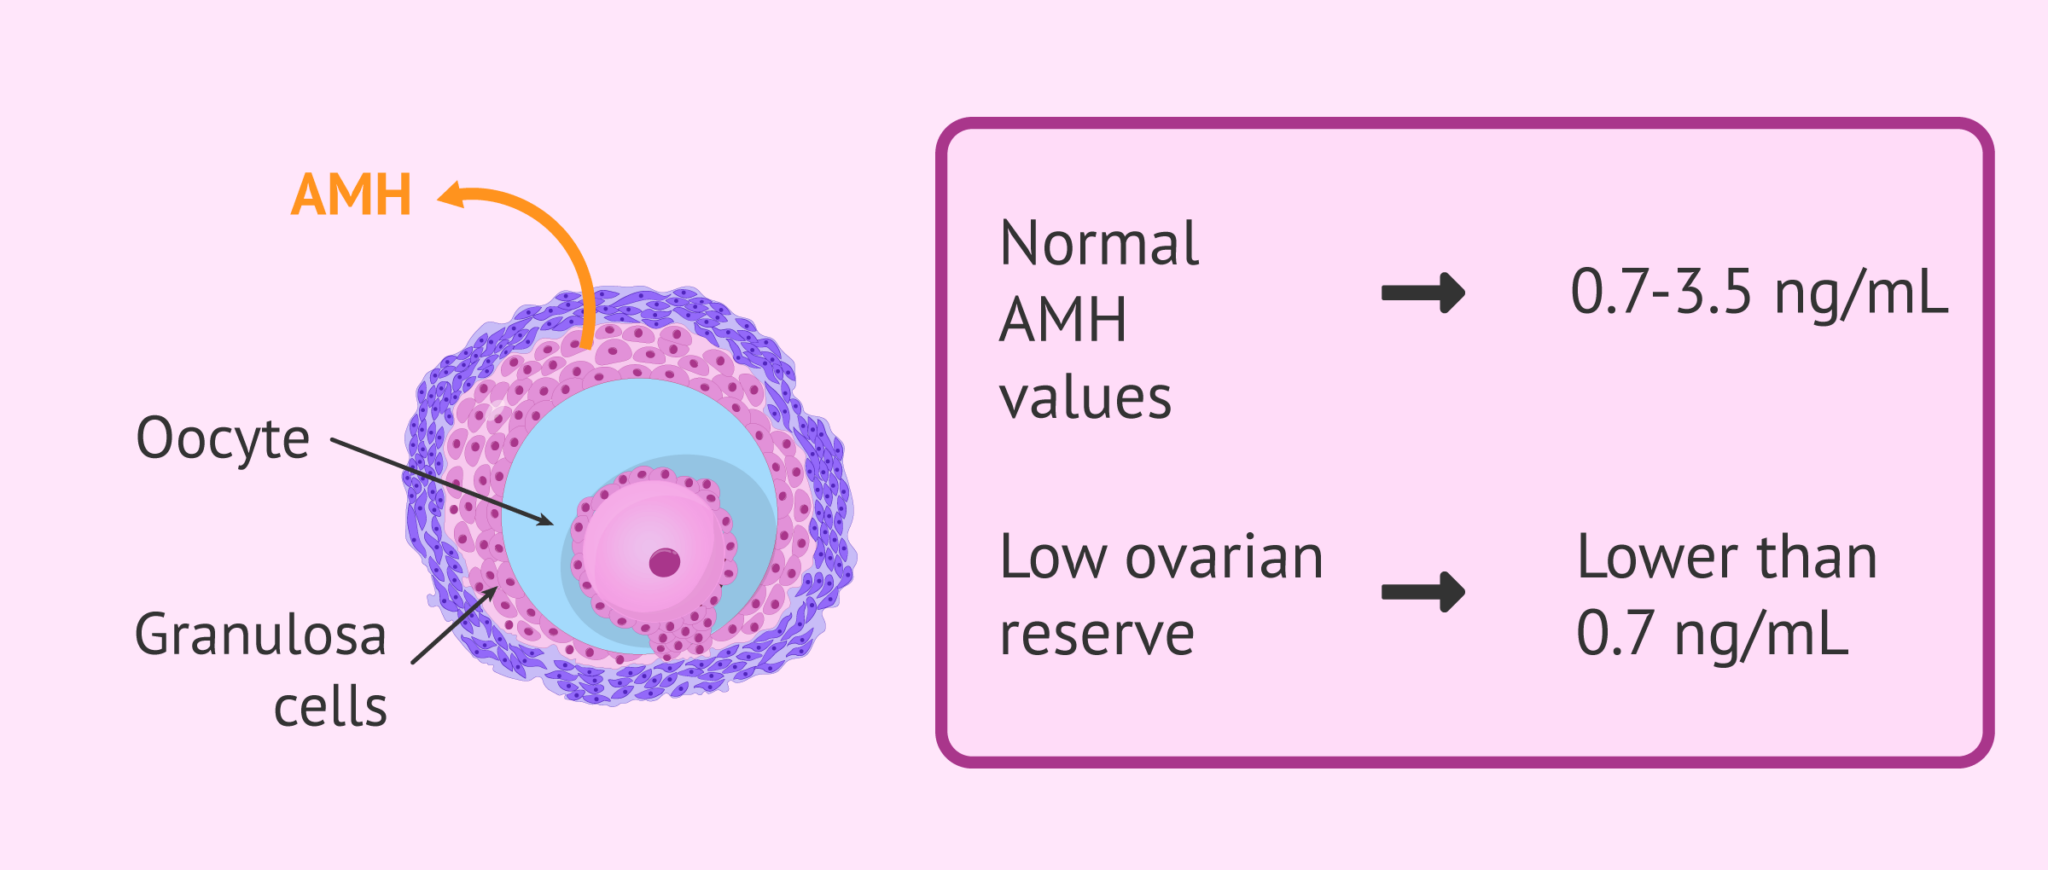 AMH Anti Müllerian Hormon kaç olmalı?